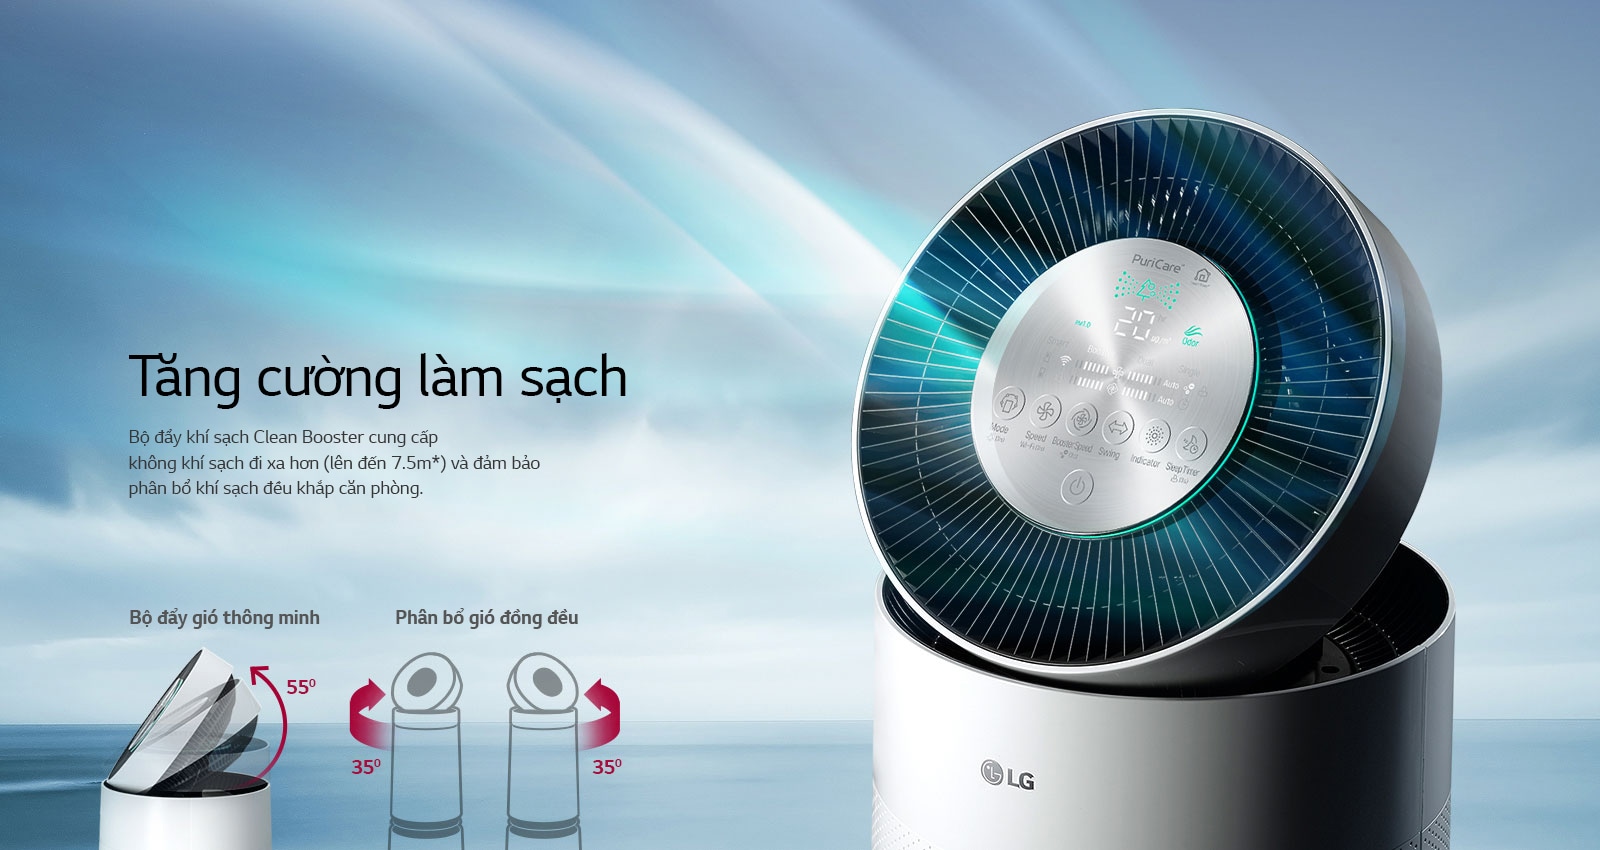 LG Máy lọc không khí LG PuriCare 2 tầng | LG Việt Nam